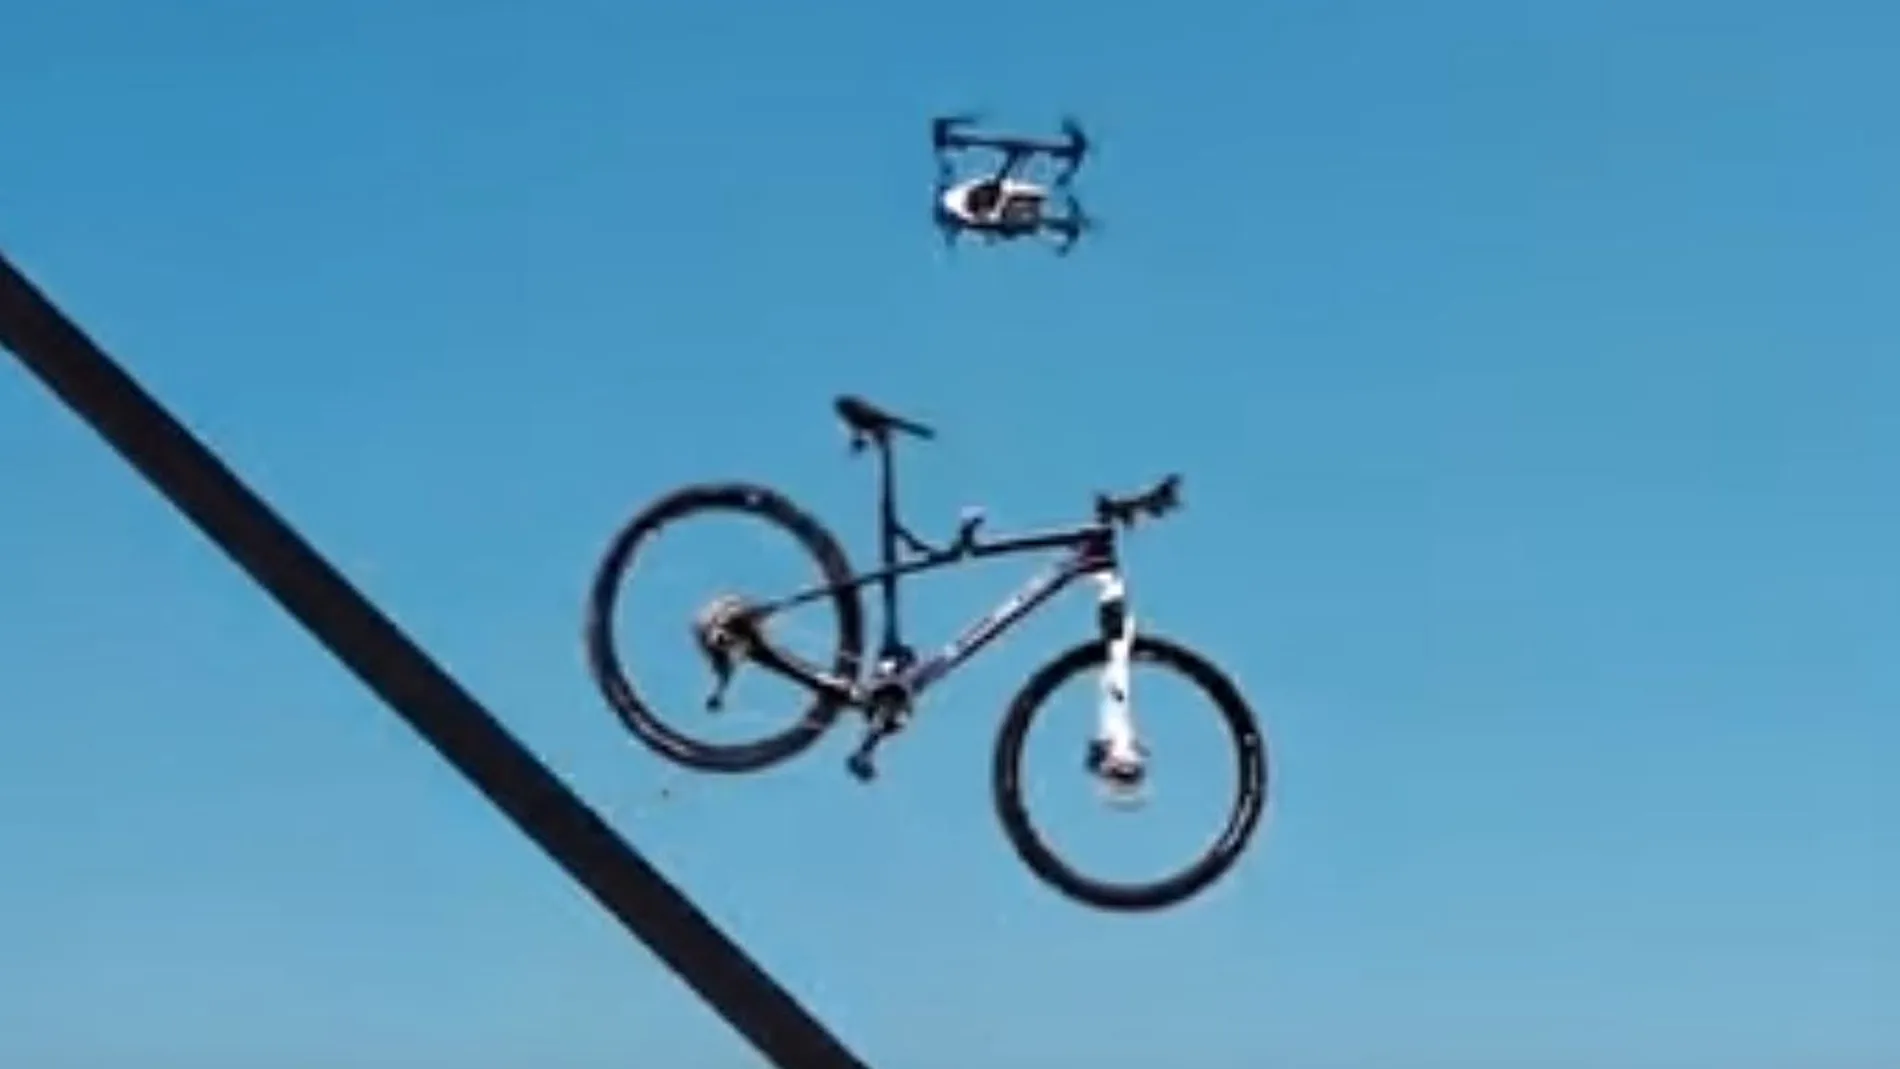 El dron apareció de repente, descendió y enganchó una de las bicicletas / YouTube